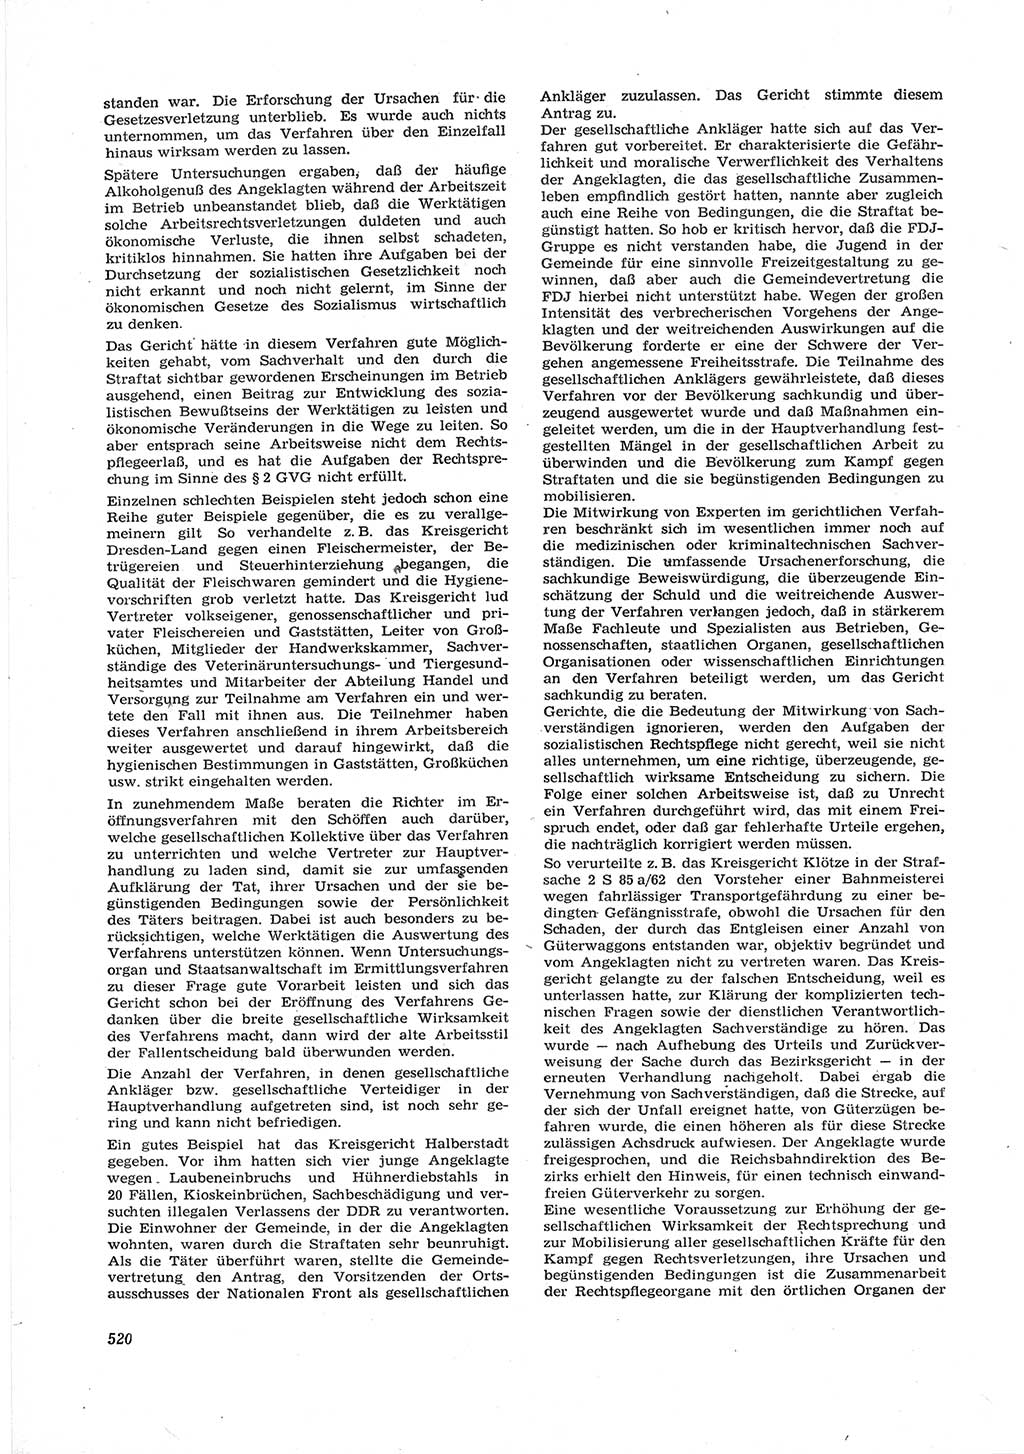 Neue Justiz (NJ), Zeitschrift für Recht und Rechtswissenschaft [Deutsche Demokratische Republik (DDR)], 17. Jahrgang 1963, Seite 520 (NJ DDR 1963, S. 520)